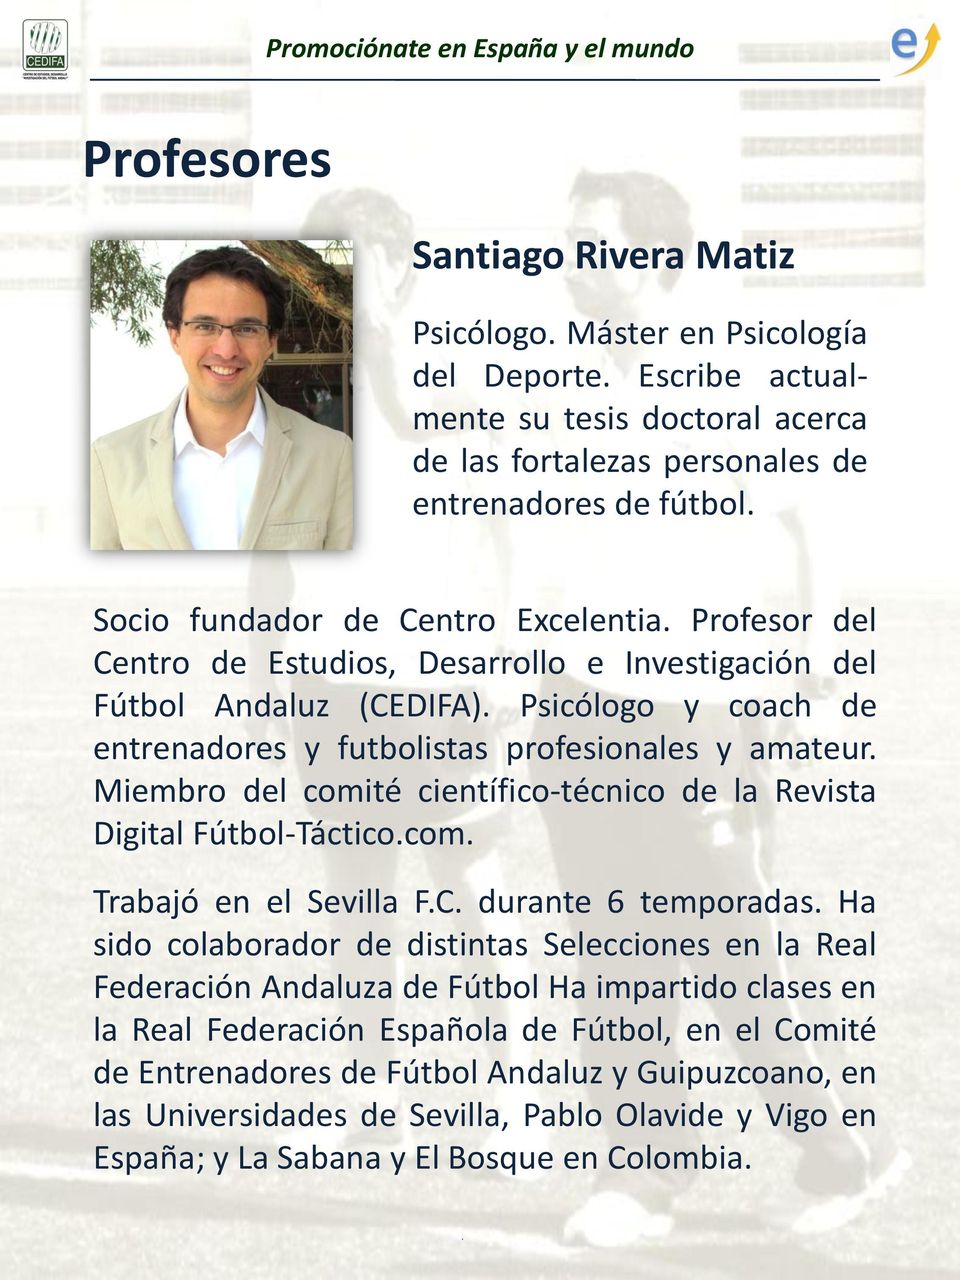 Profesor del Centro de Estudios, Desarrollo e Investigación del Fútbol Andaluz (CEDIFA). Psicólogo y coach de entrenadores y futbolistas profesionales y amateur.